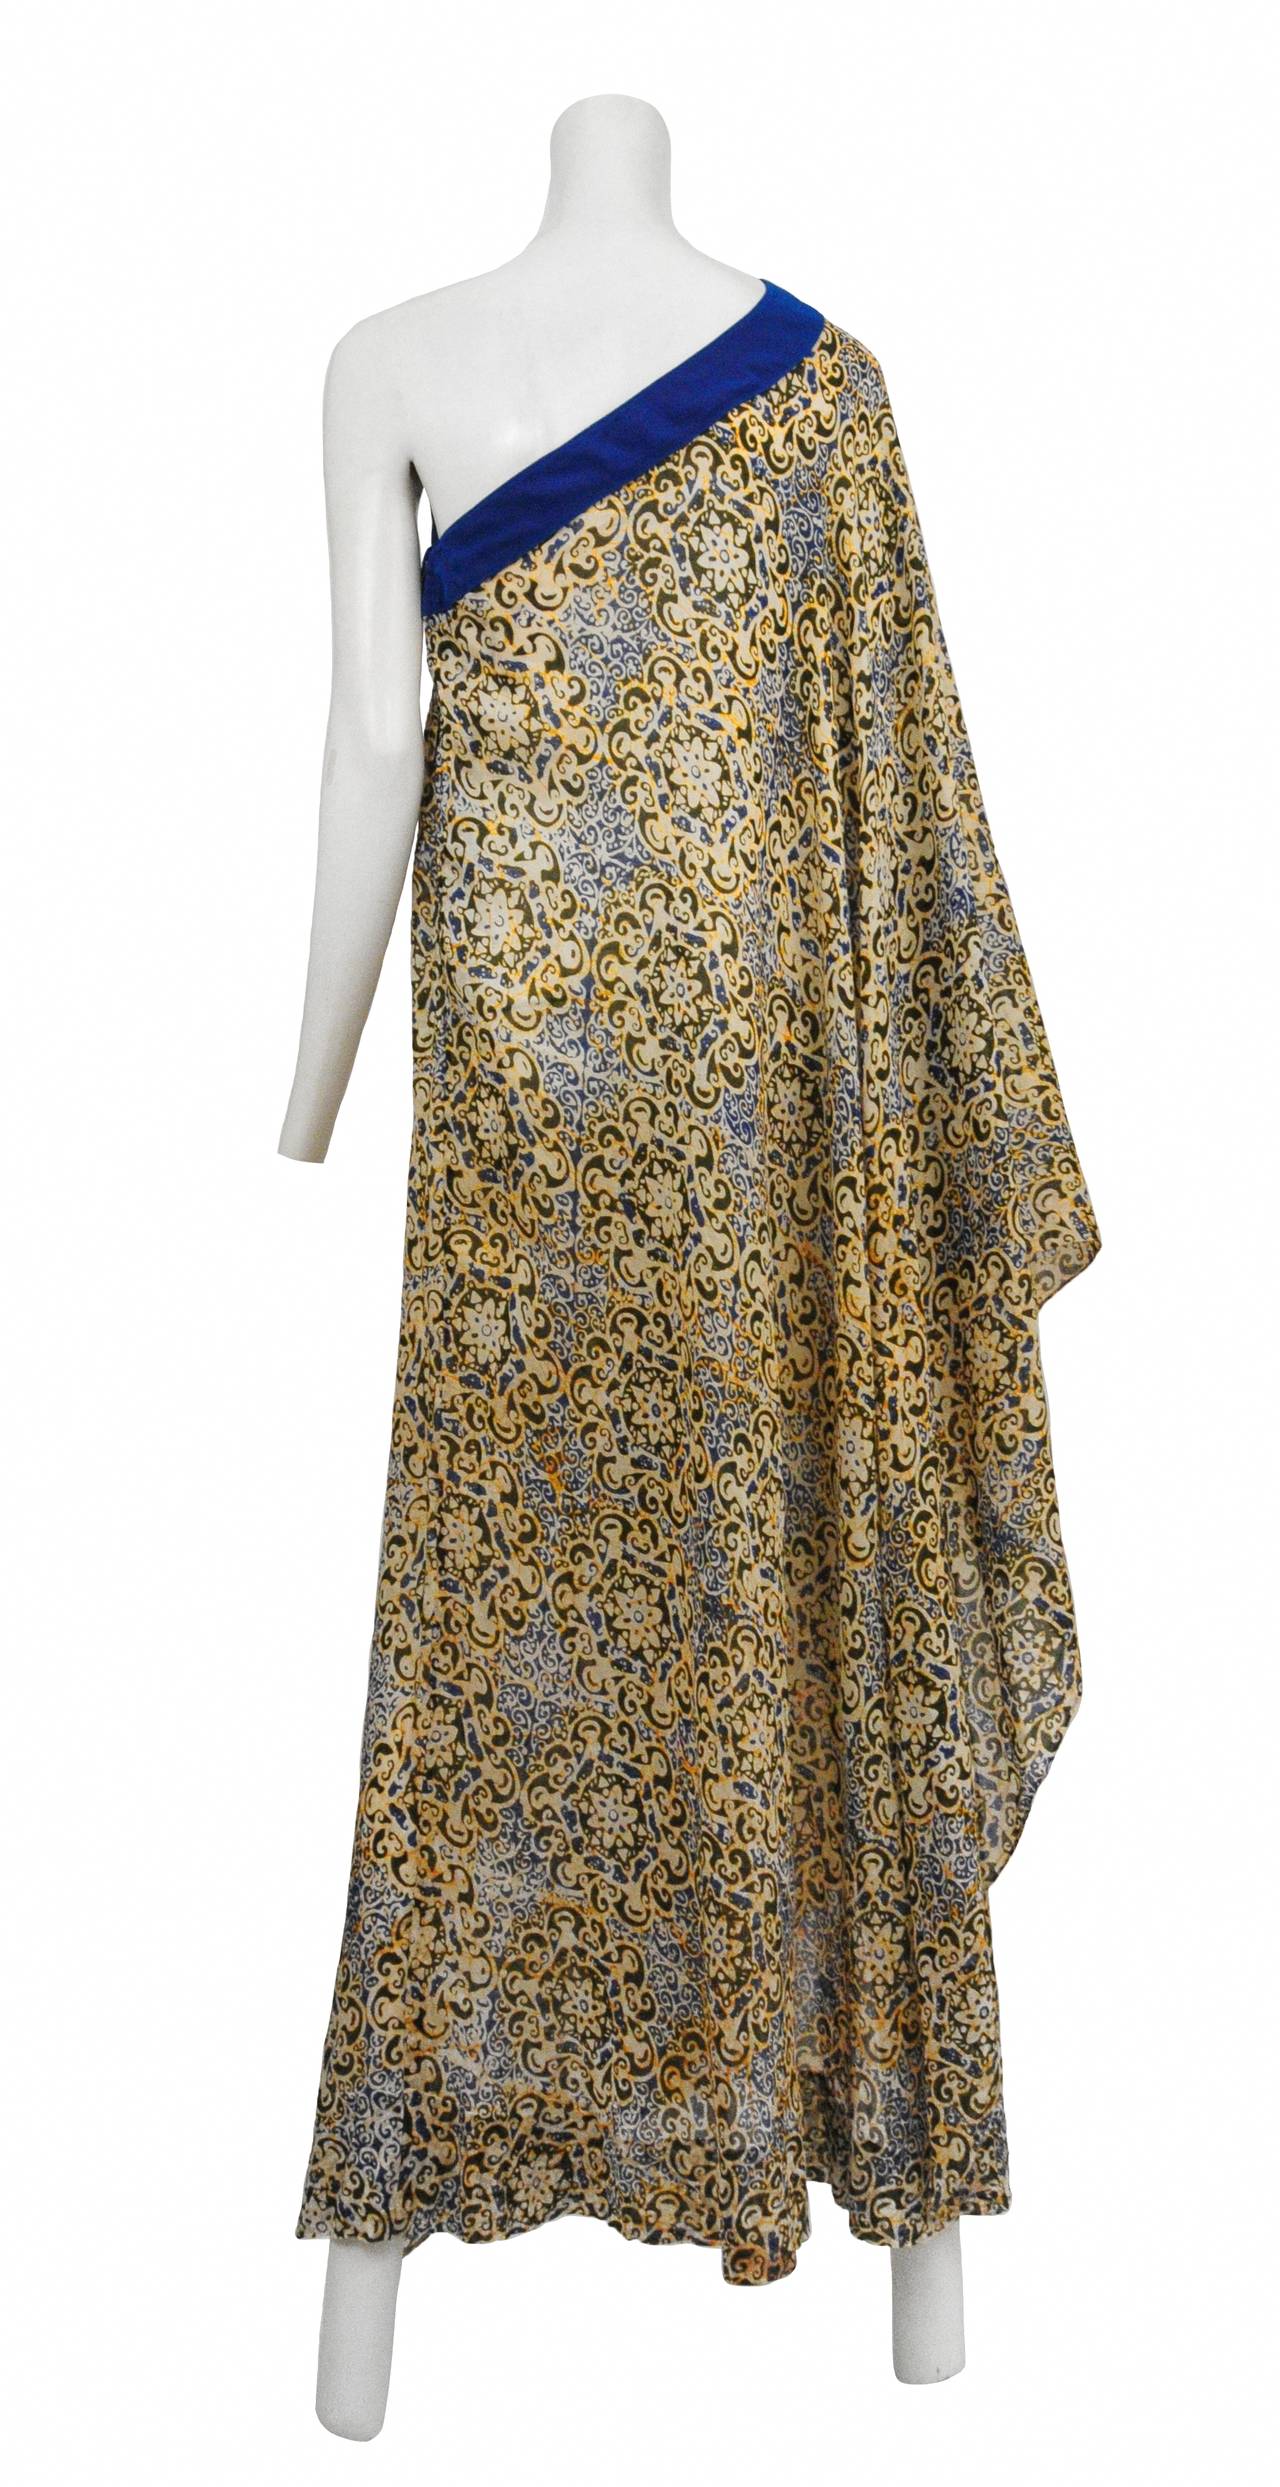 Vintage Yuki London indian cotton batik asymmetrical caftan gown with blue chiffon trim.